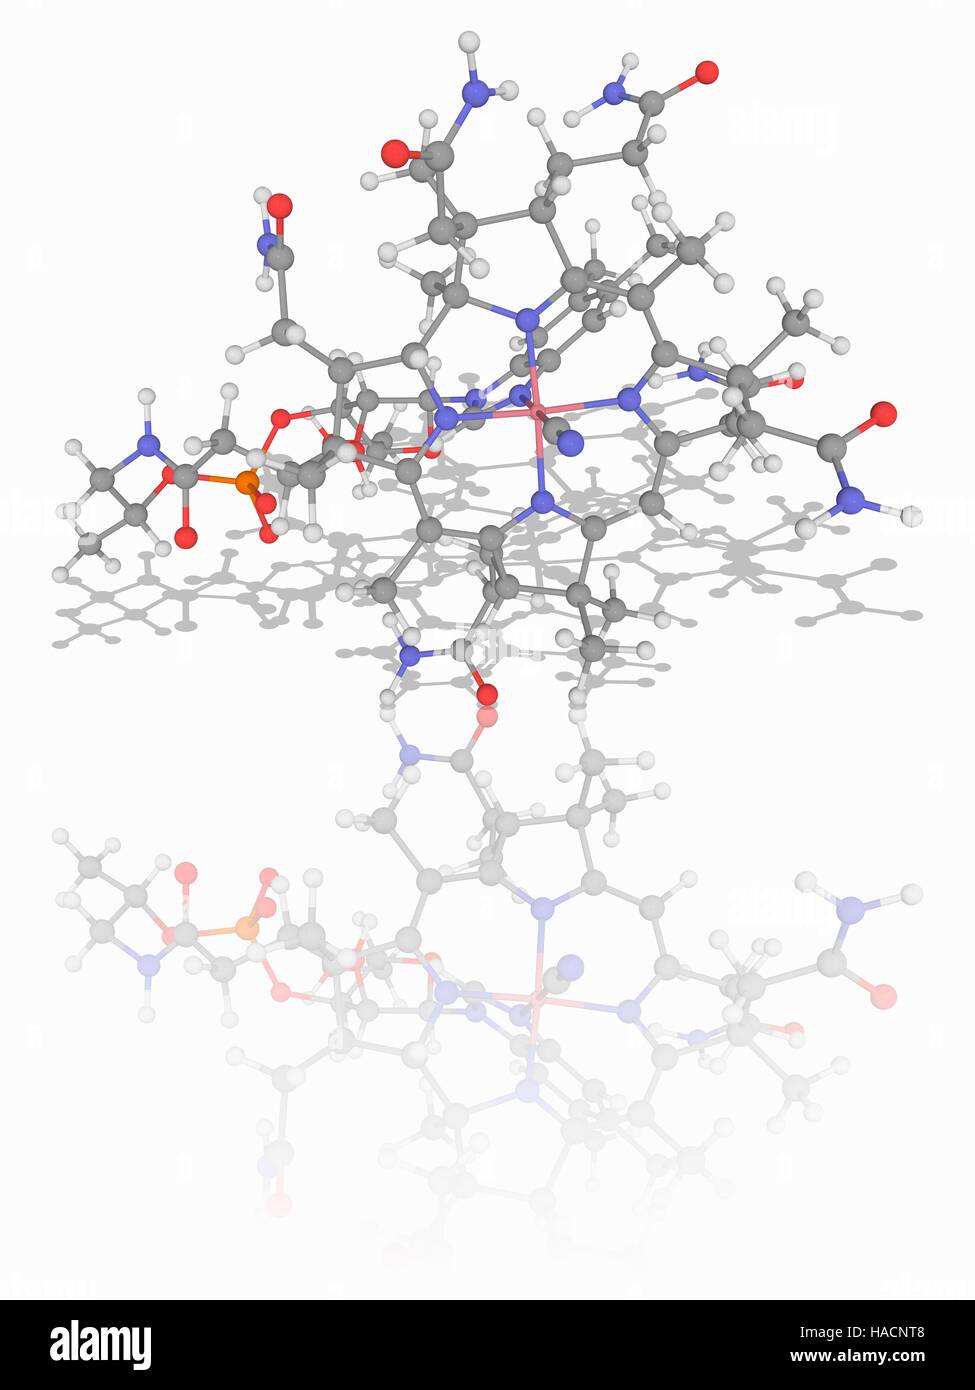 La vitamine B12. Le modèle moléculaire de la cyanocobalamine (C63.H88.fr N14.O14.P) forme de vitamine B12. Cette vitamine joue un rôle clé dans le fonctionnement normal du cerveau et du système nerveux. Les atomes sont représentés comme des sphères et sont codés par couleur : cobalt (rose), carbone (gris), l'hydrogène (blanc), l'azote (bleu), l'oxygène (rouge) et de phosphore (orange). L'illustration. Banque D'Images